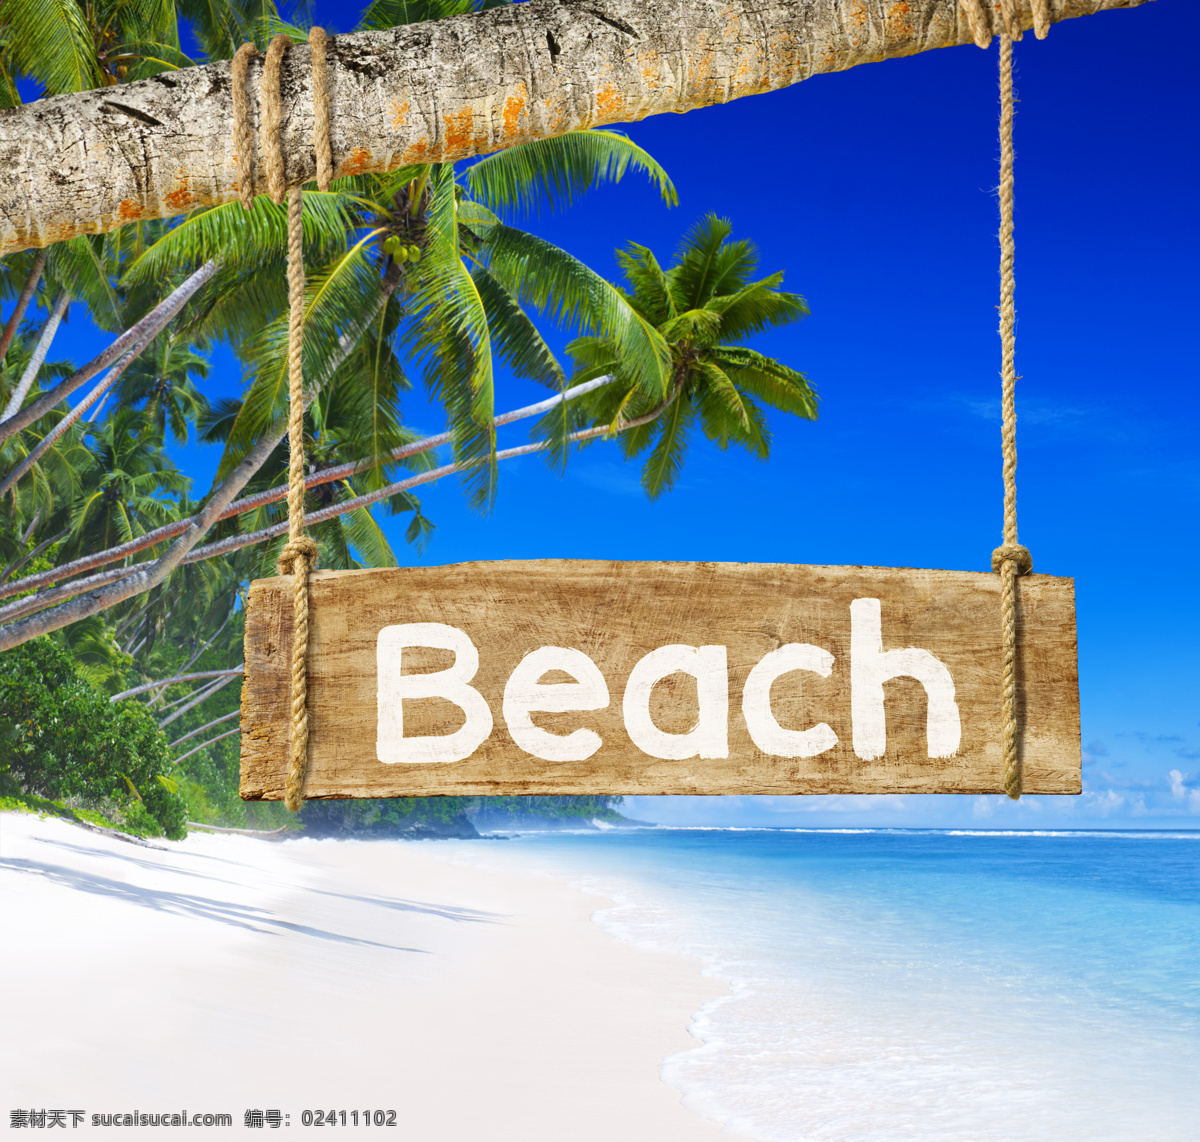 海边 旅游景点 美景 大海 海浪 沙滩 蓝天 树 椰子树 beach 树干 大海图片 风景图片